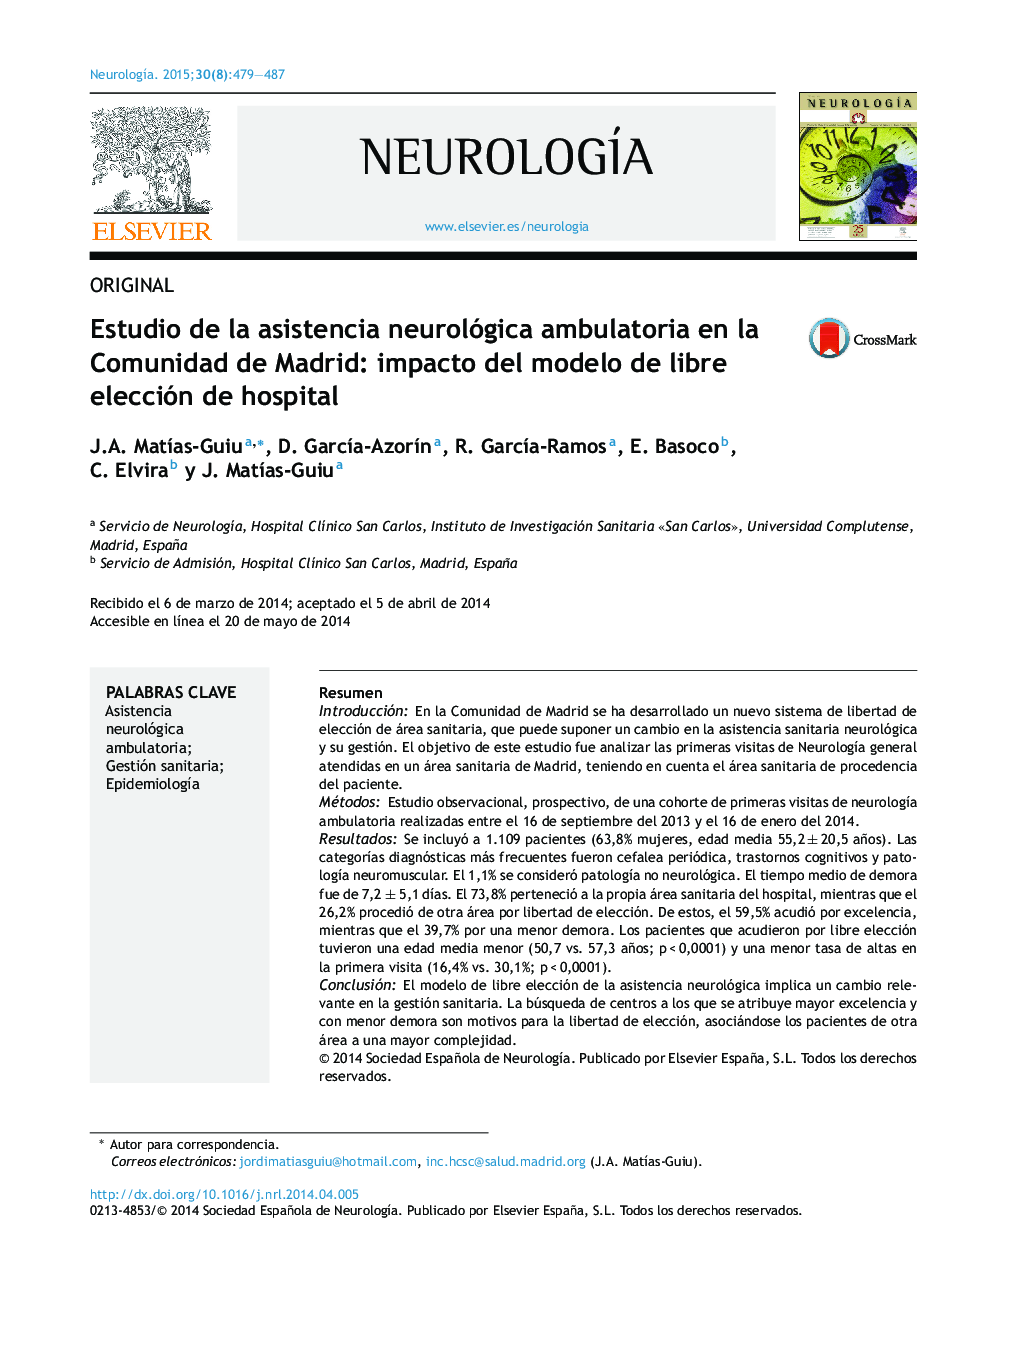 Estudio de la asistencia neurológica ambulatoria en la Comunidad de Madrid: impacto del modelo de libre elección de hospital